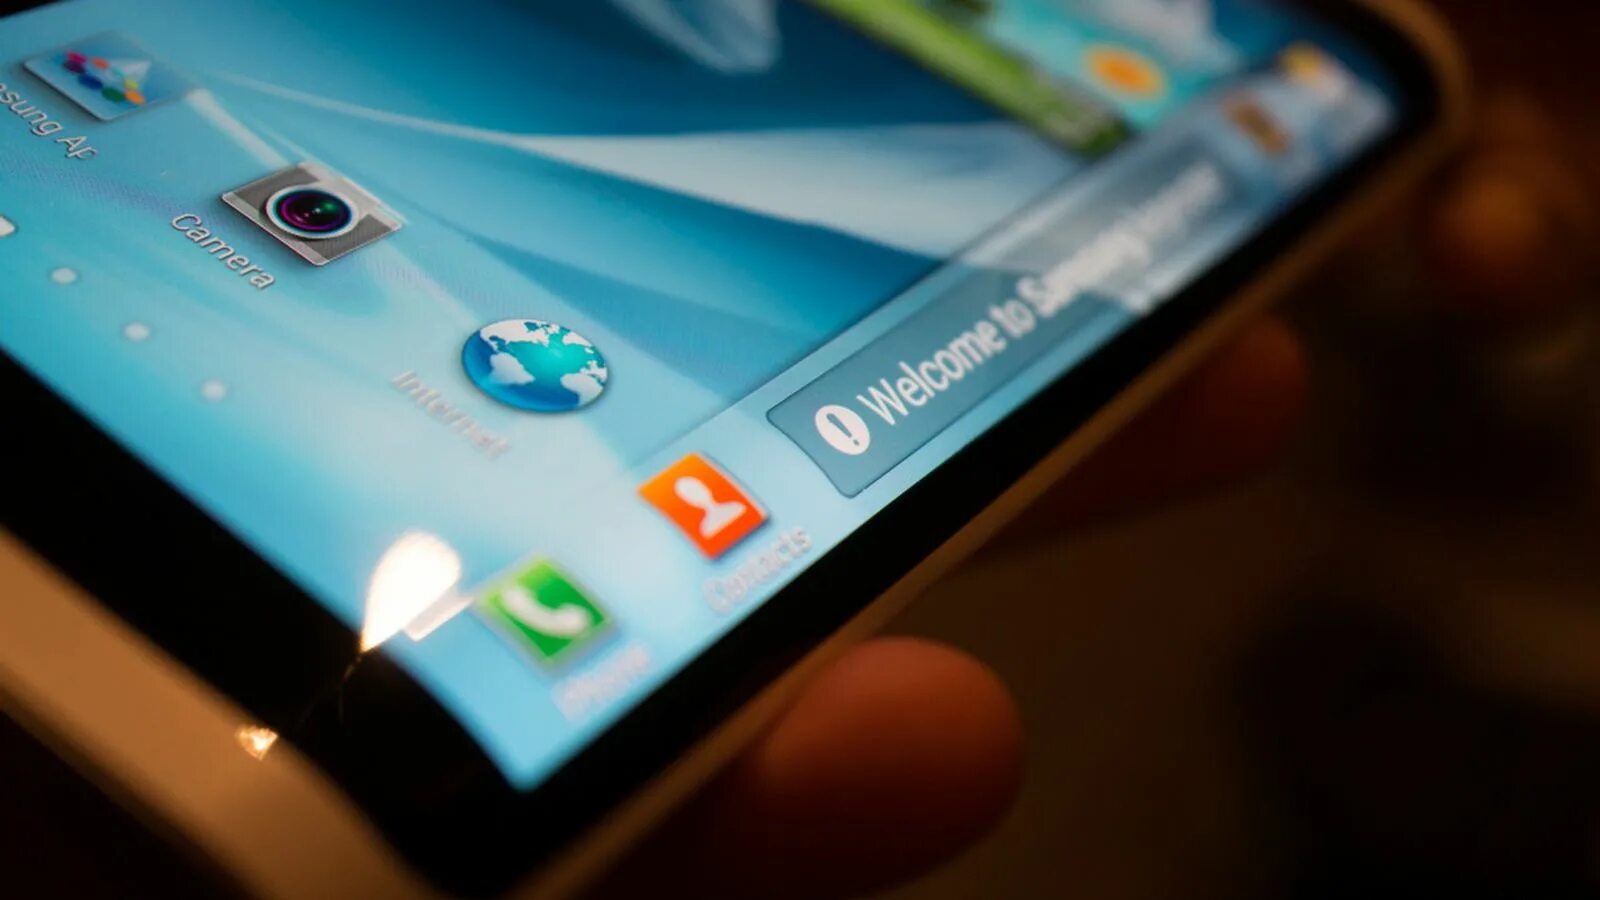 Самсунг галакси с изогнутым экраном. Samsung Galaxy s IV С гибким OLED-дисплеем. Самсунг галакси изогнутый экран. Самсунг галакси с изогнутым экраном 2016. Картинка экрана самсунг телефоны